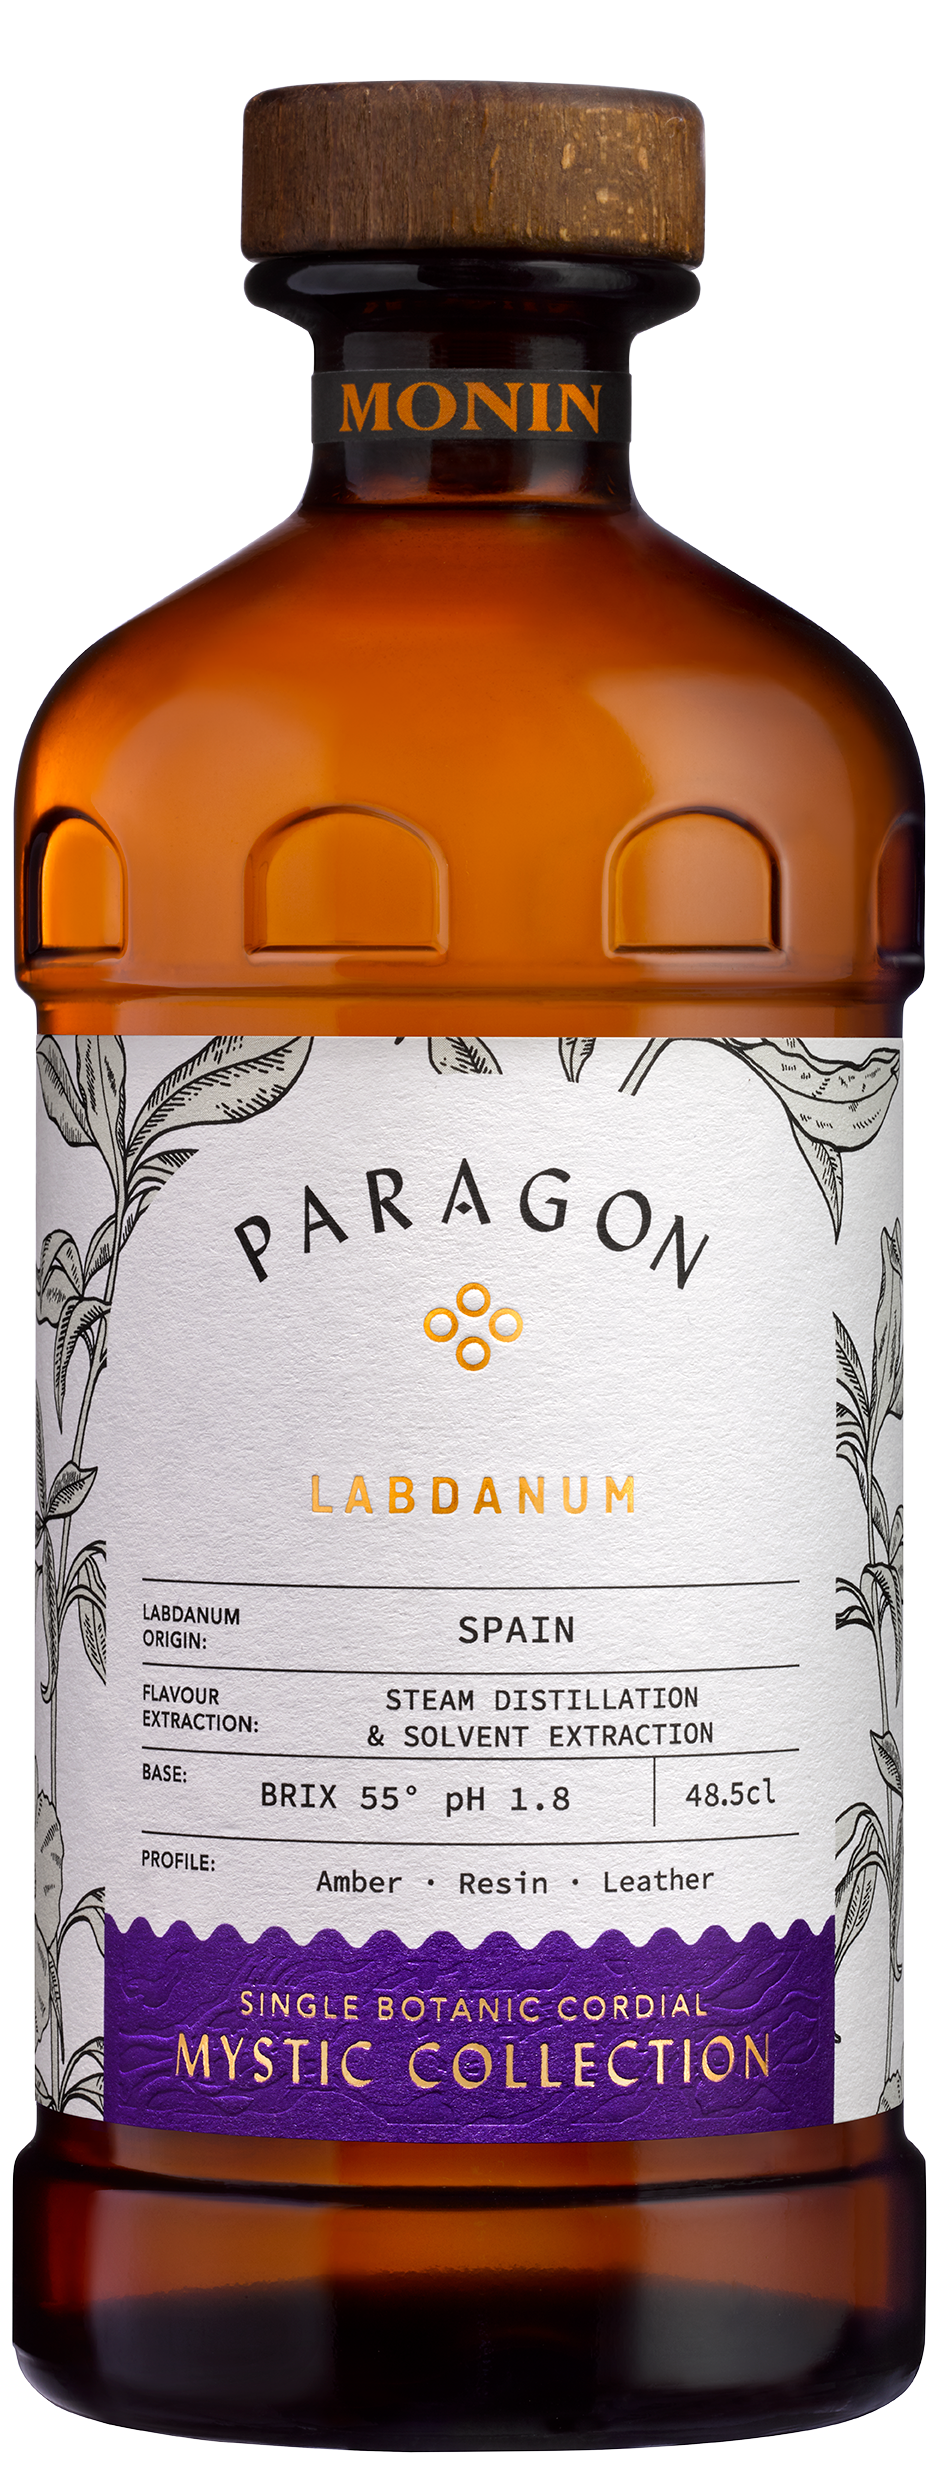 Paragon Labdanum premium cordial